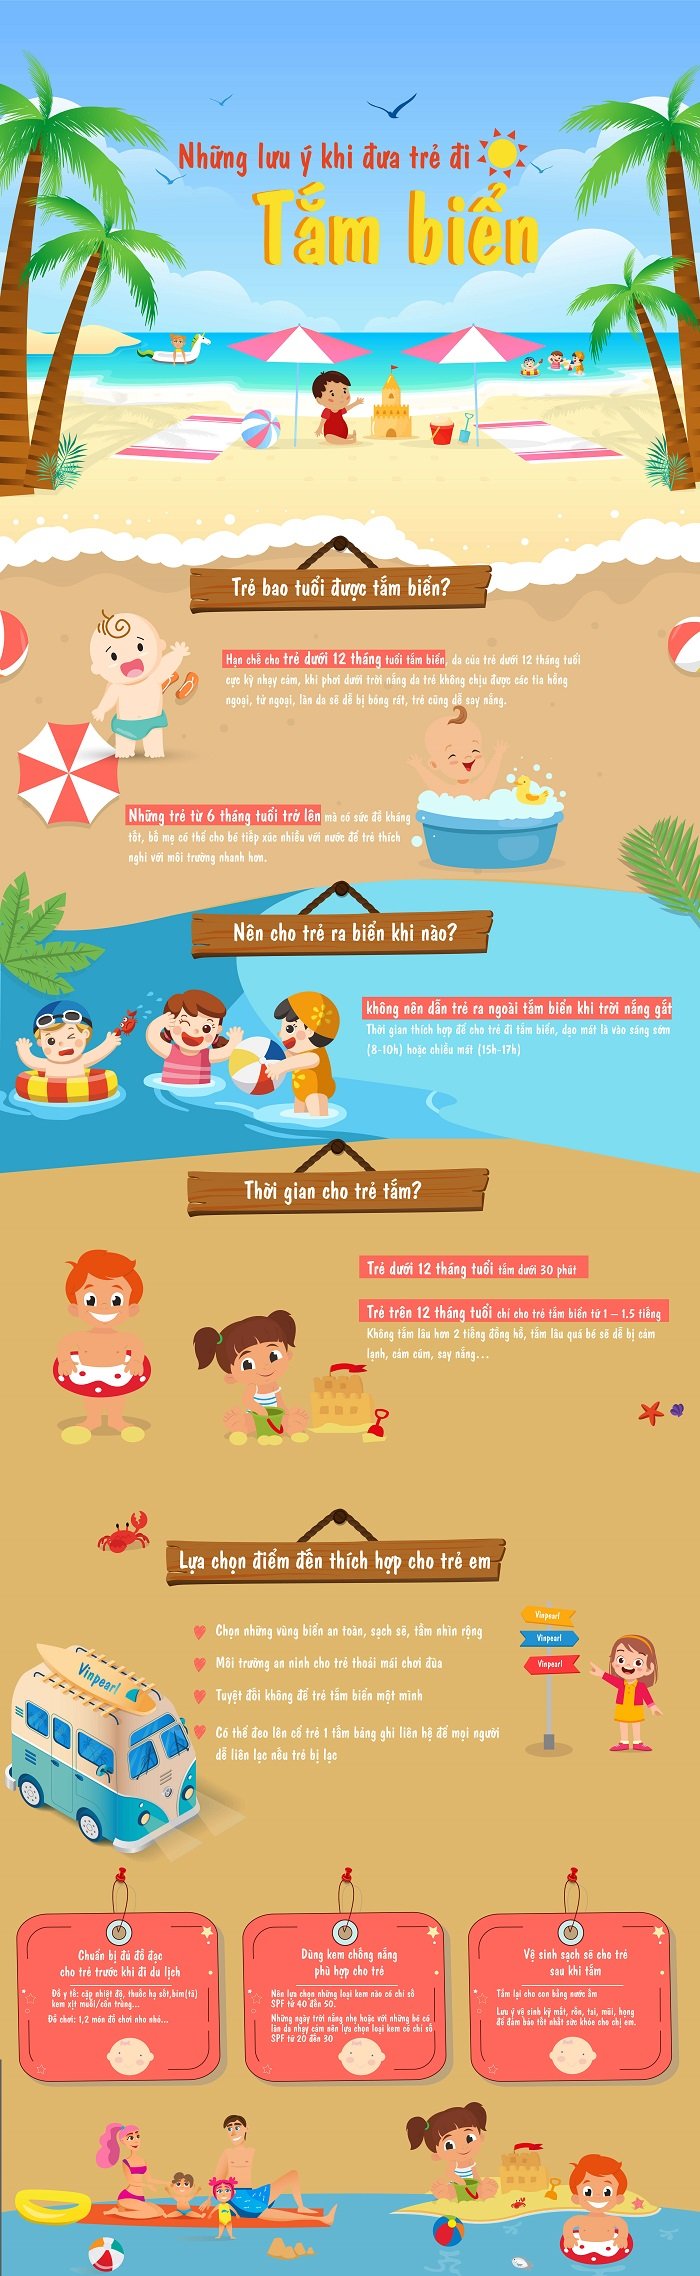 Những lưu ý khi đưa trẻ đi tắm biển